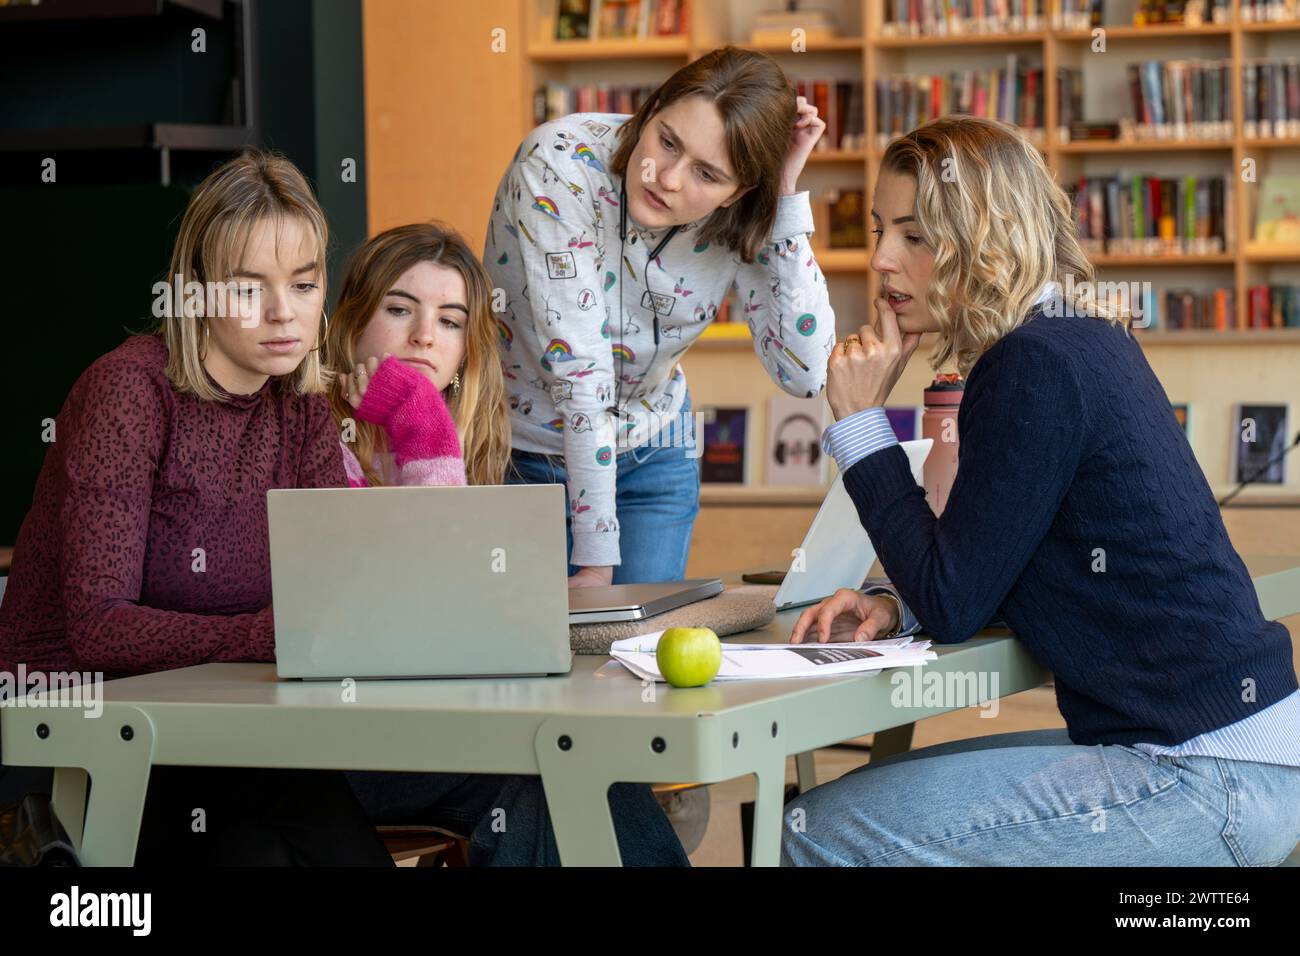 Eine Gruppe von vier jungen Frauen konzentrierte sich auf einen Laptop-Bildschirm, während sie an einem Tisch mit Büchern, Papieren und einem Apfel saßen und schlug eine Studie oder Arbeitssitzung vor. Stockfoto